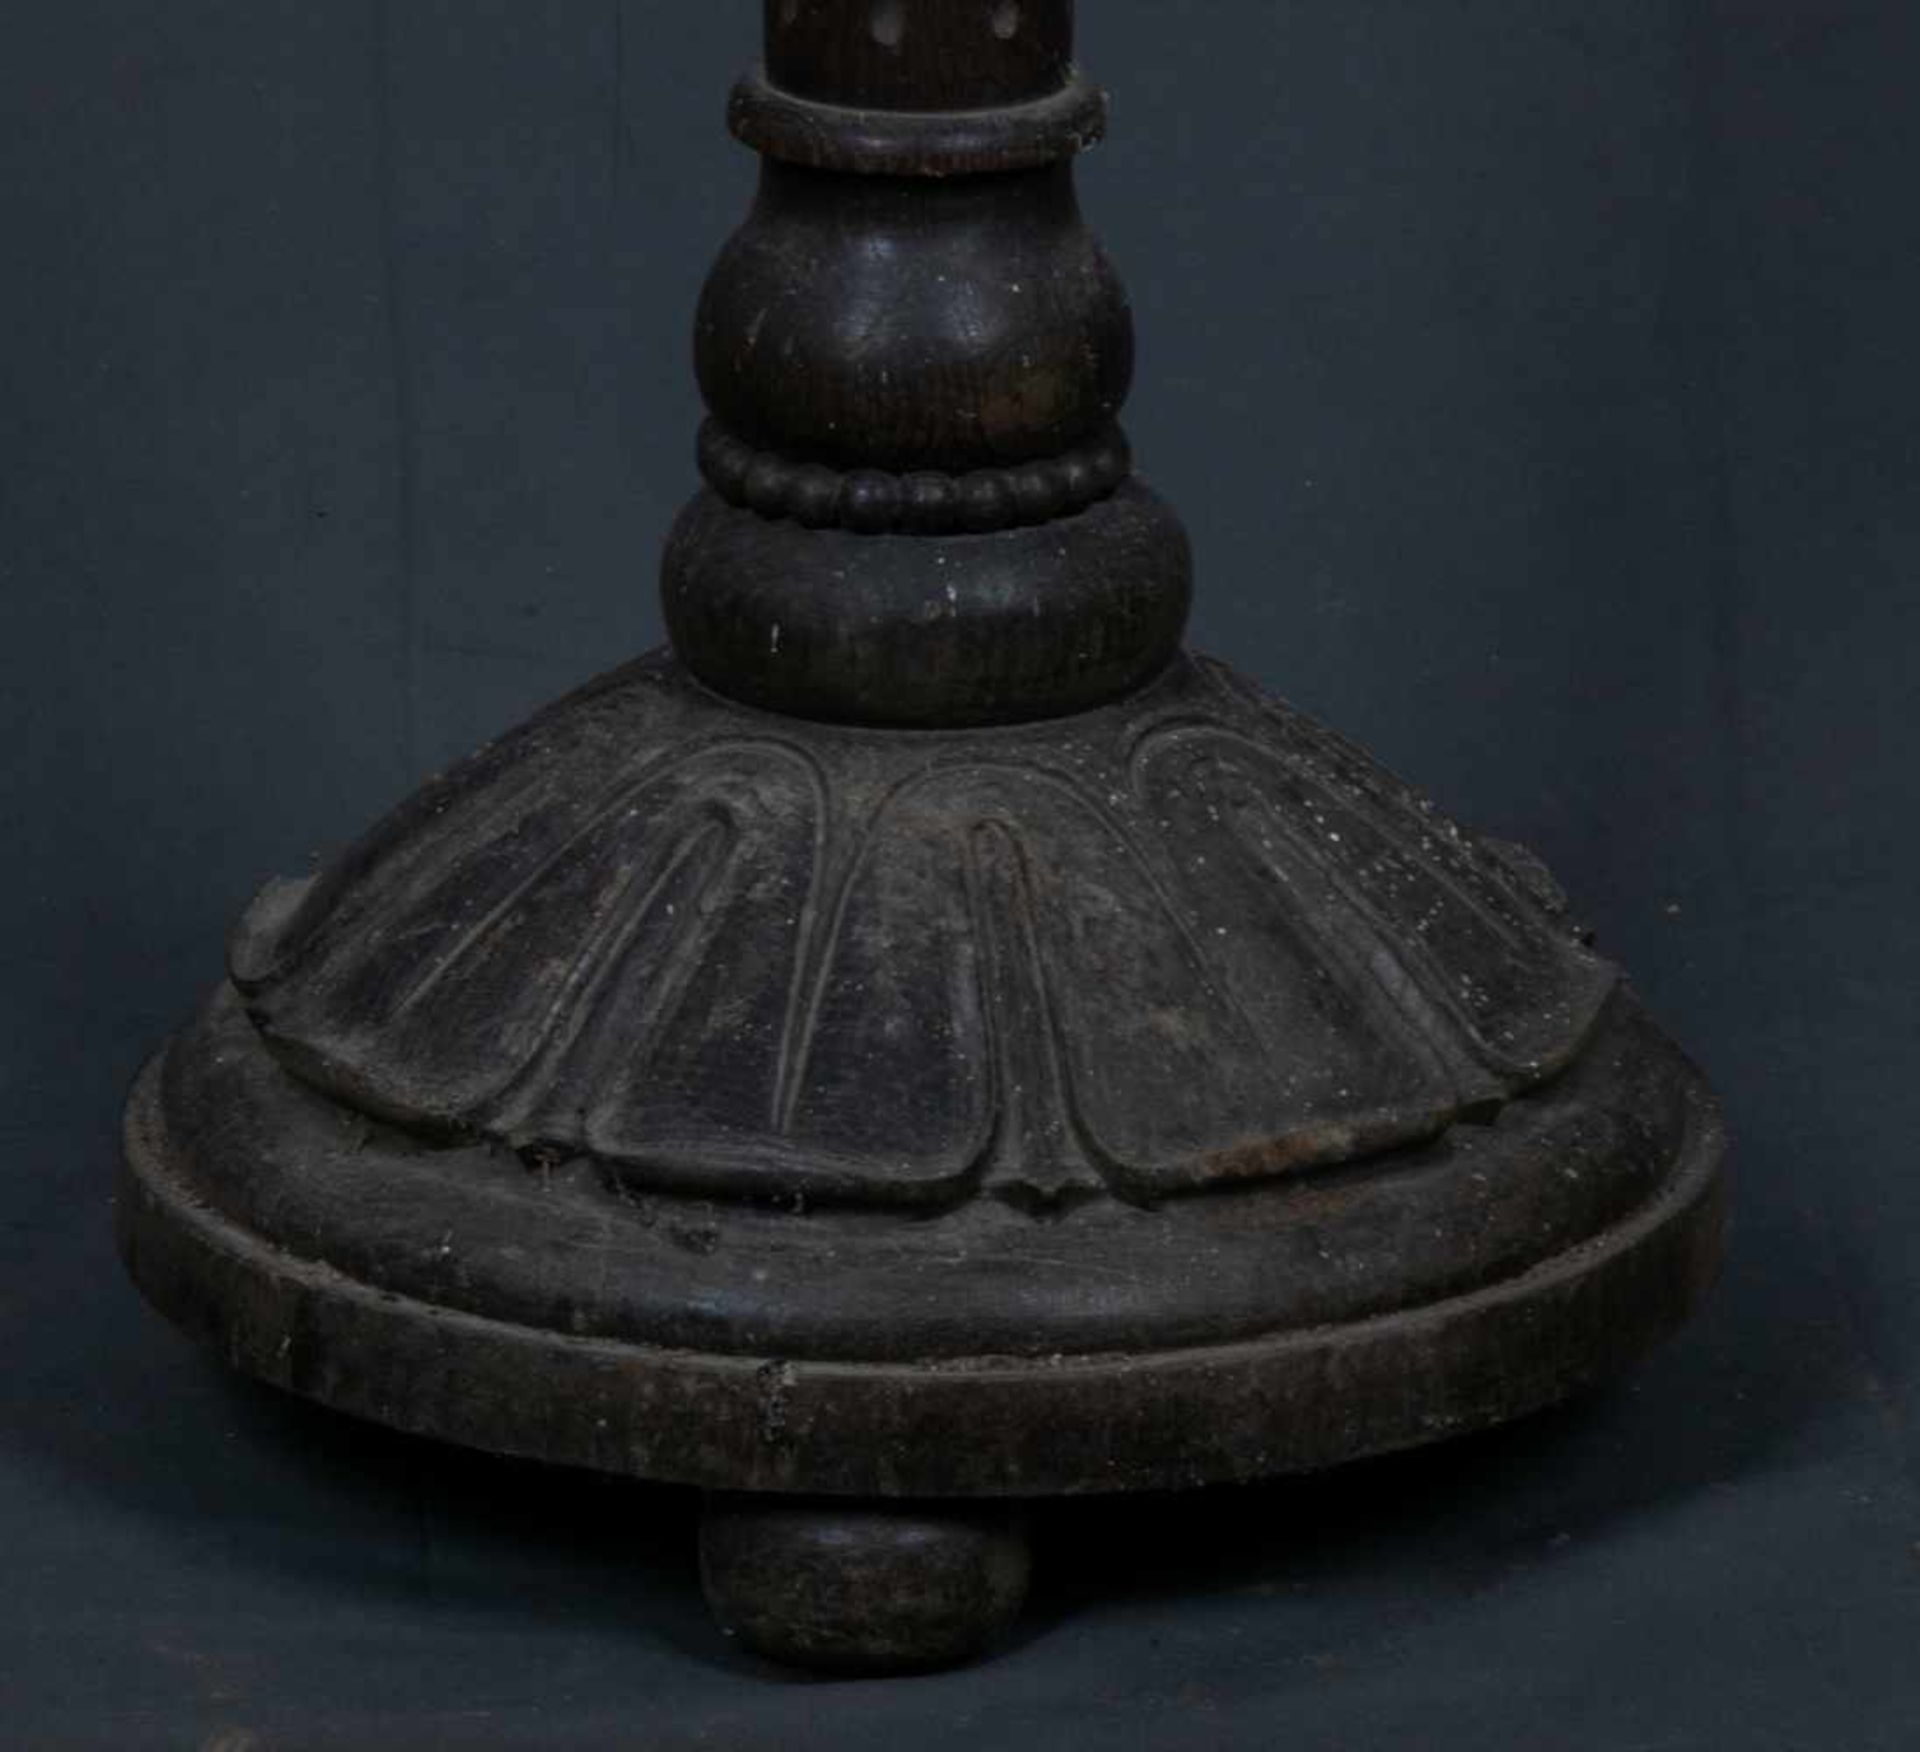 Säulenartiger Beistelltisch, z. B. für eine Büste o. ä., geschnitzter Holzfuß, dunkel gebeizt, - Bild 2 aus 5